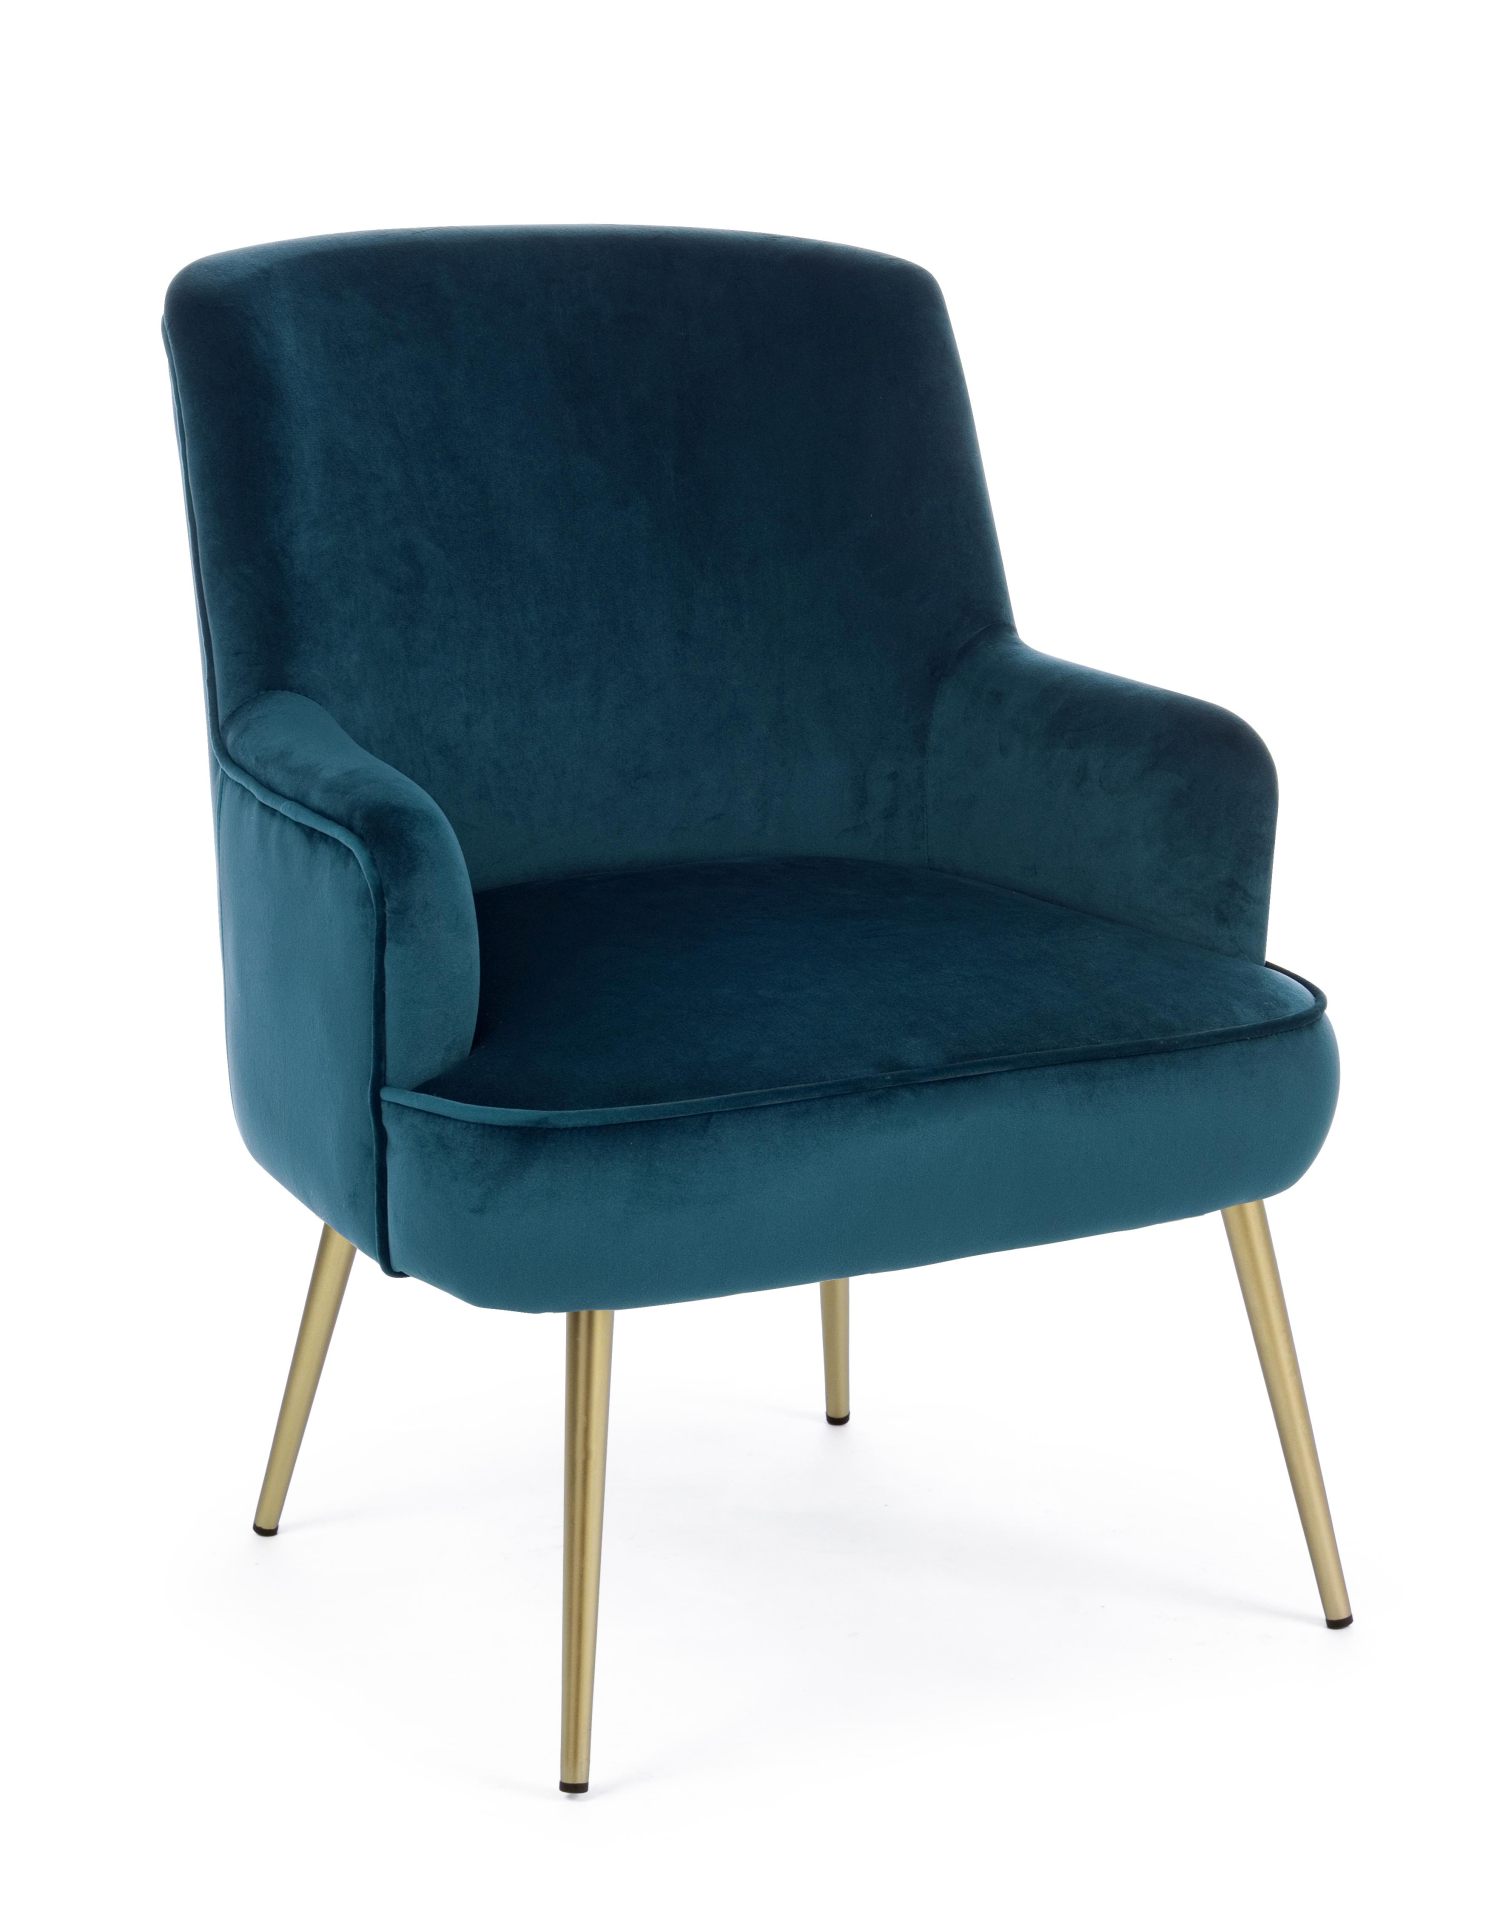 Der Sessel Clelia überzeugt mit seinem modernen Design. Gefertigt wurde er aus Stoff in Samt-Optik, welcher einen blauen Farbton besitzt. Das Gestell ist aus Metall und hat eine goldene Farbe. Der Sessel besitzt eine Sitzhöhe von 43 cm. Die Breite beträgt